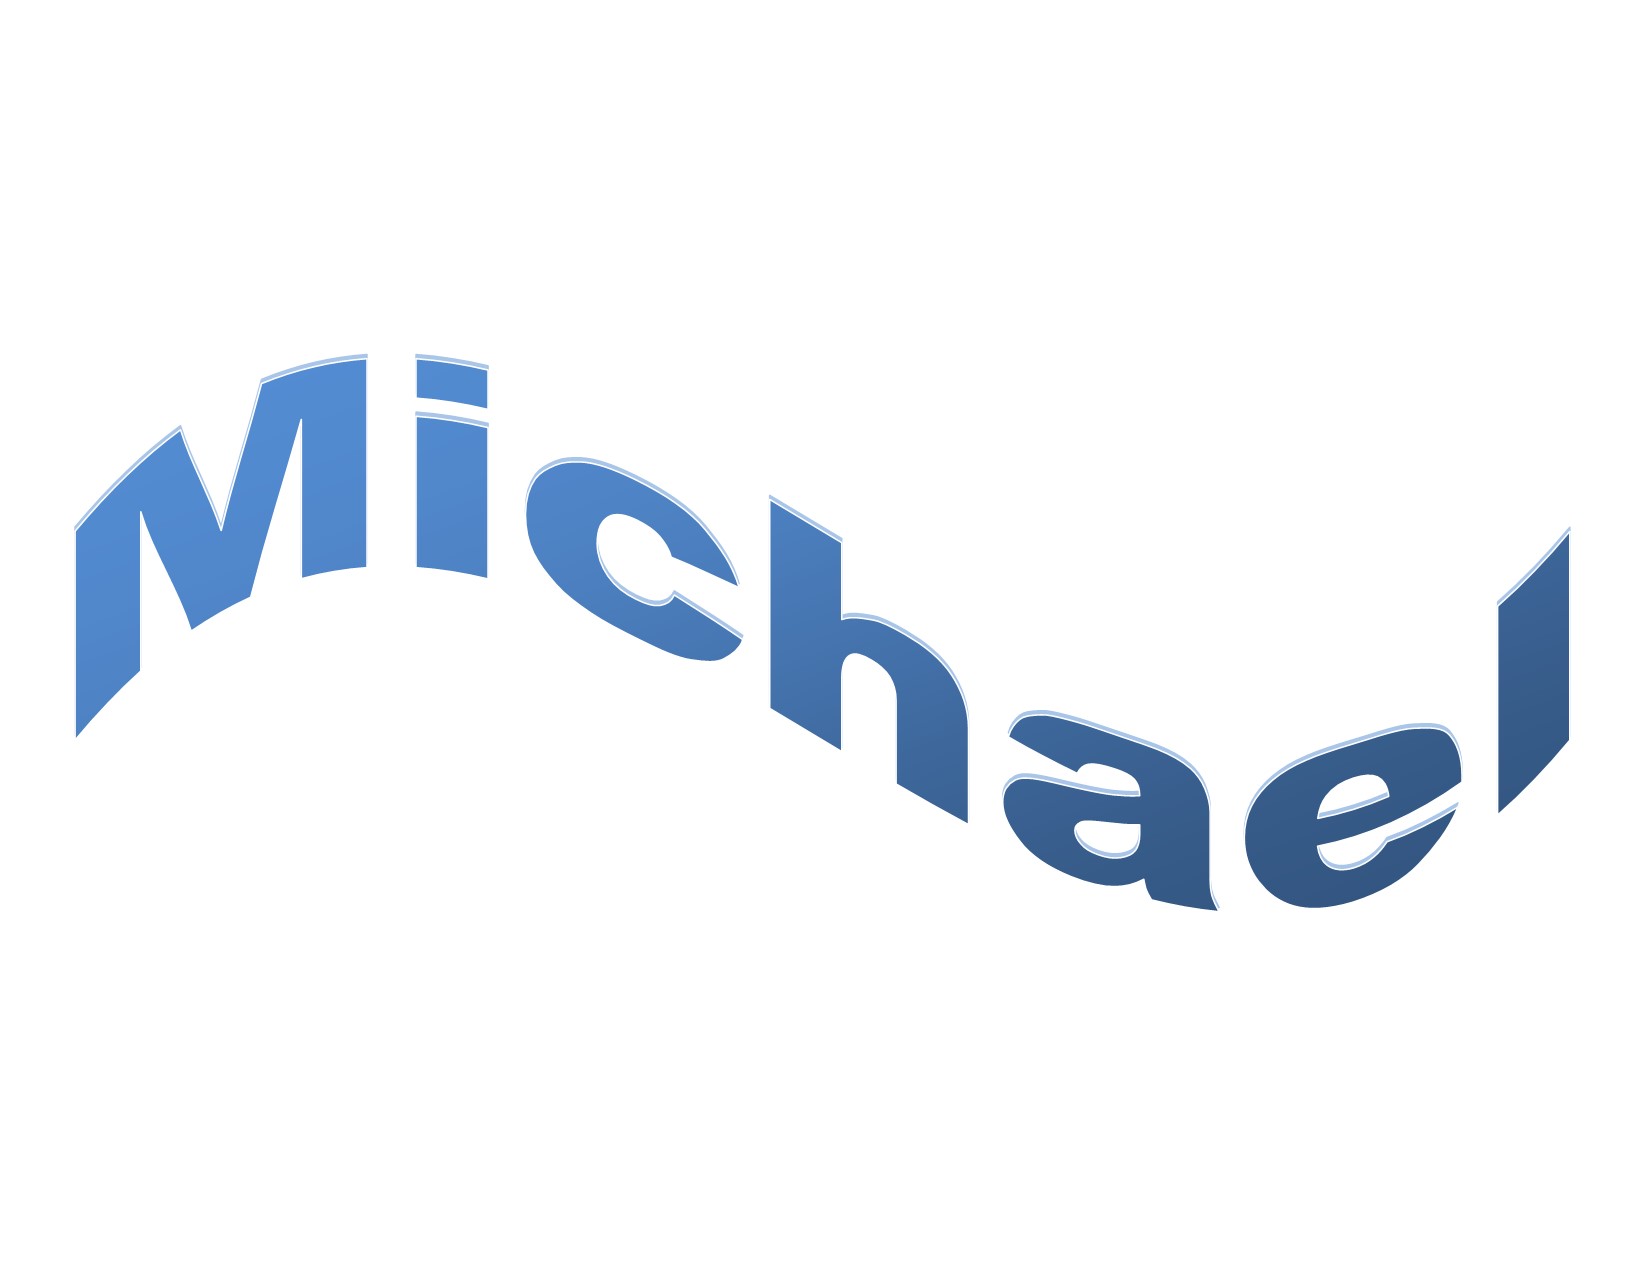 Michael’s songs